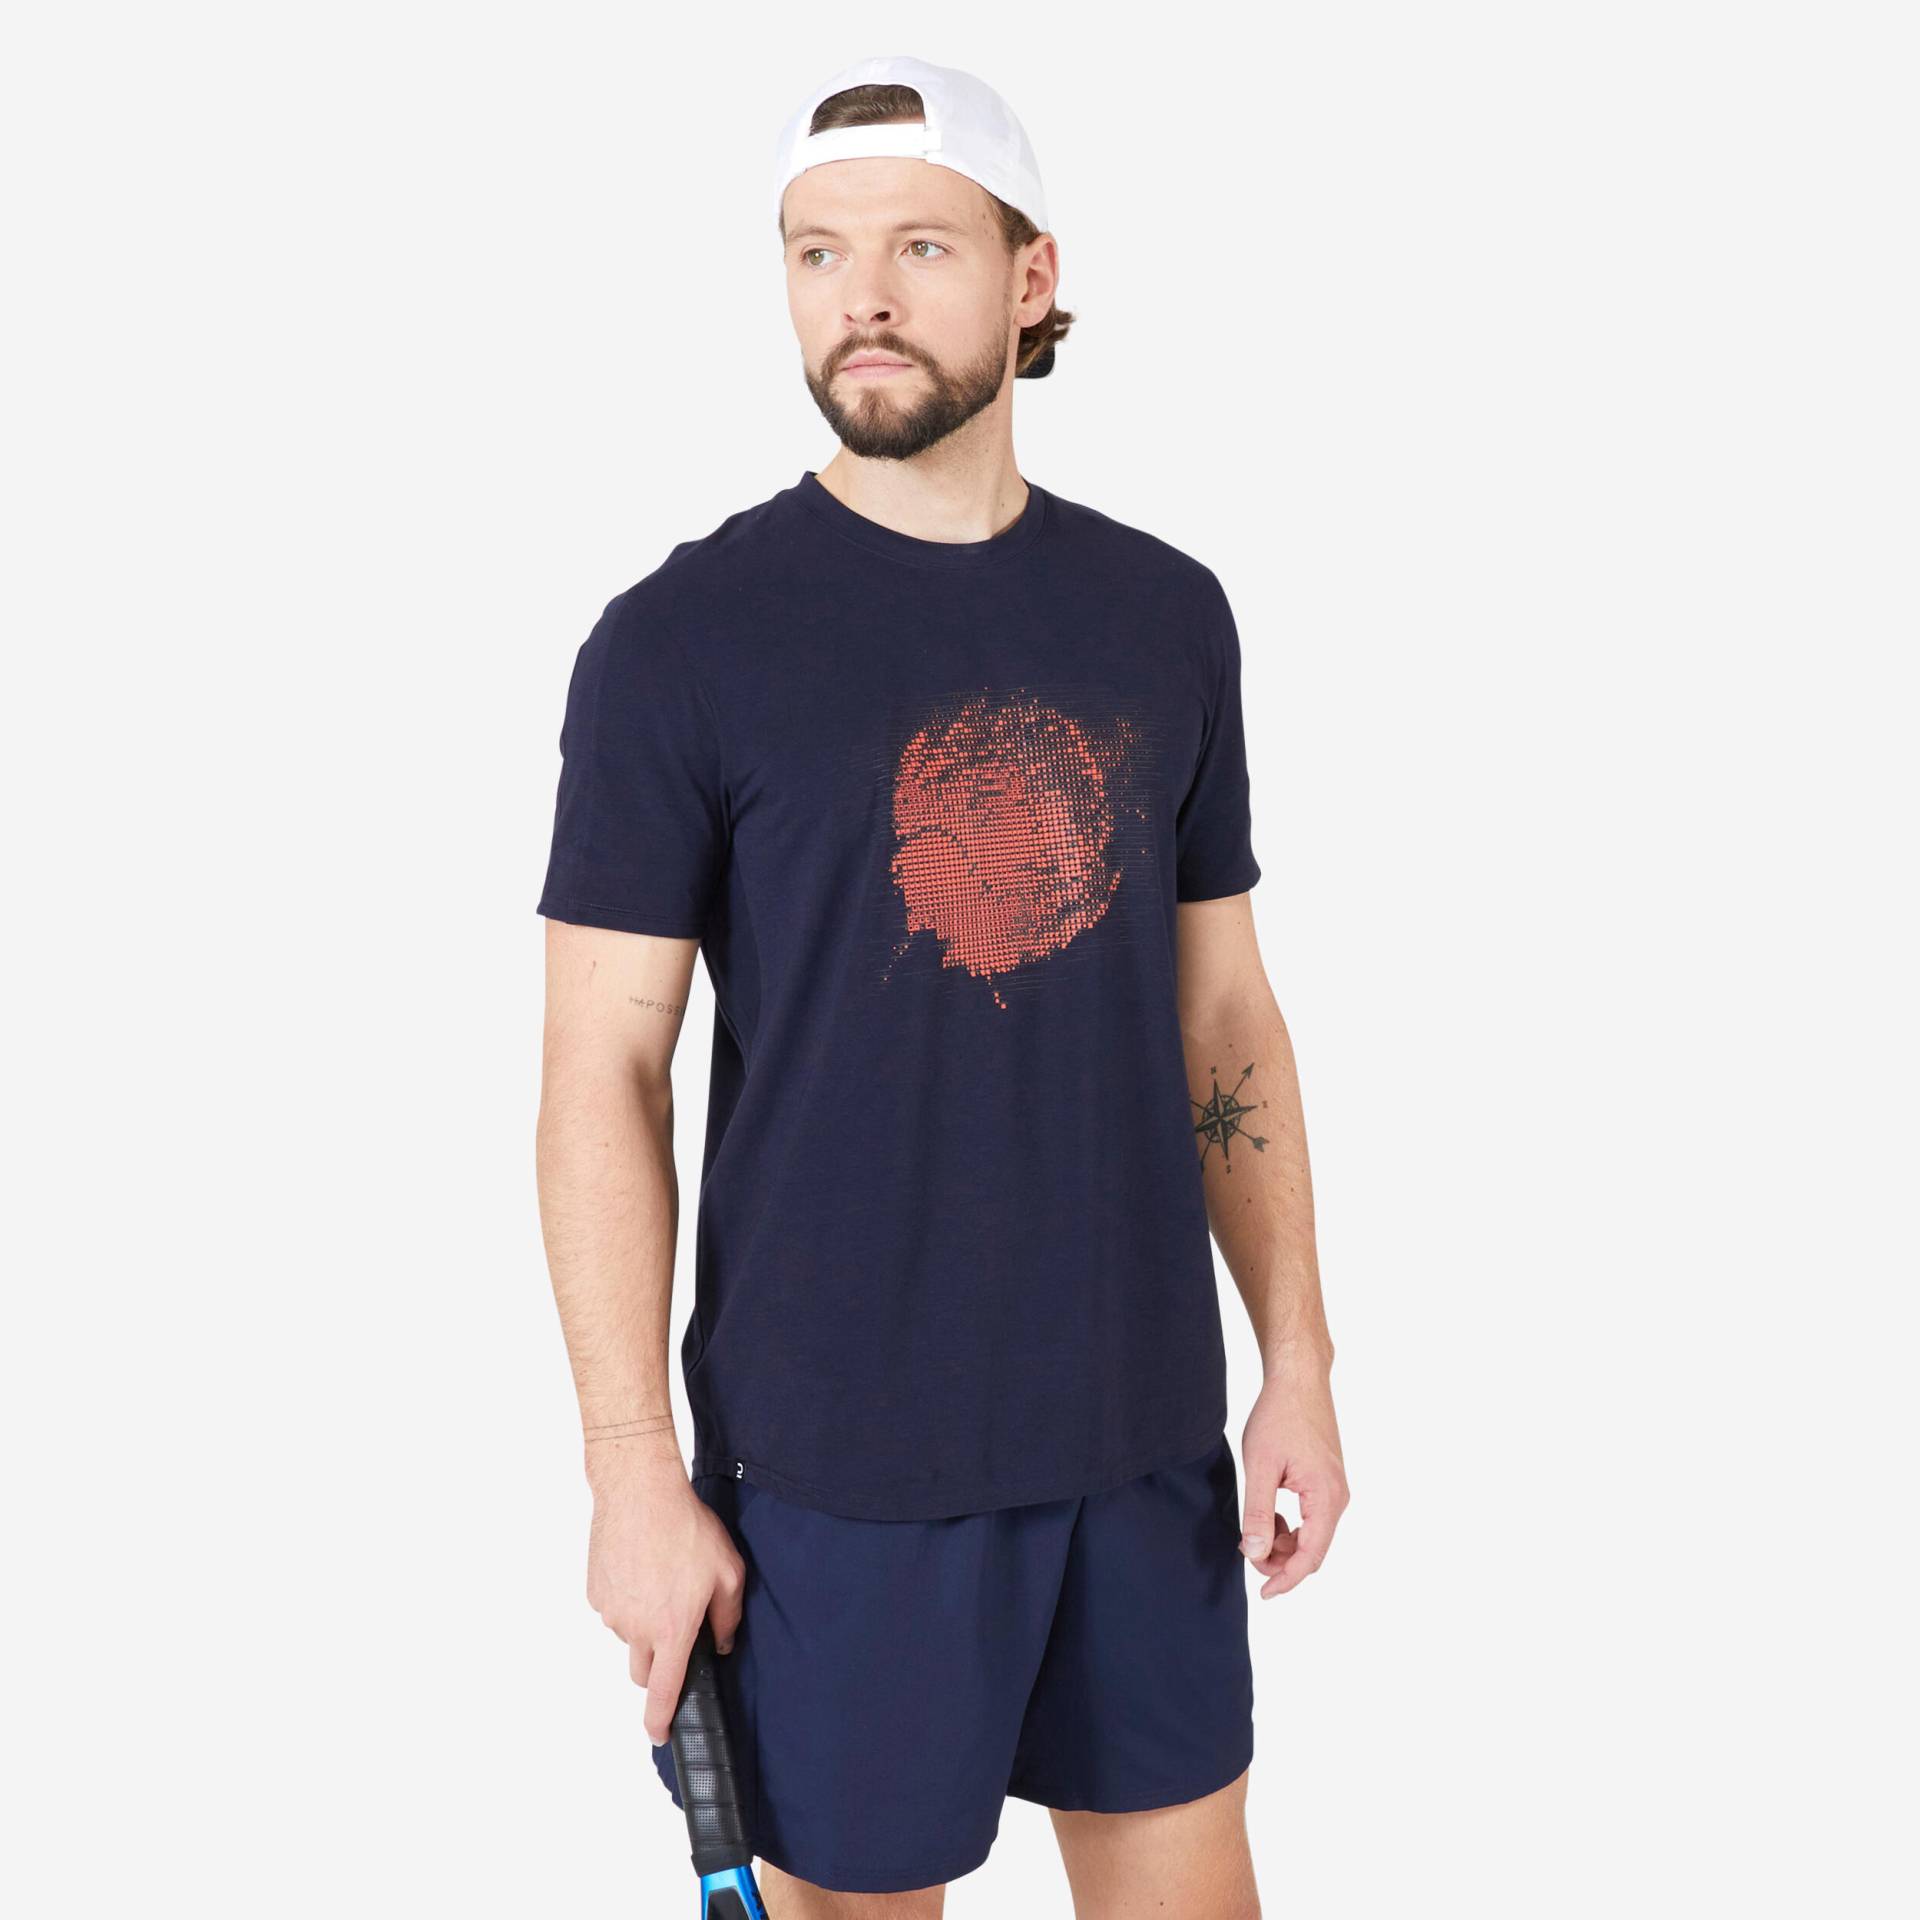 Tennis-Shirt Herren - Soft TTS marineblau von ARTENGO